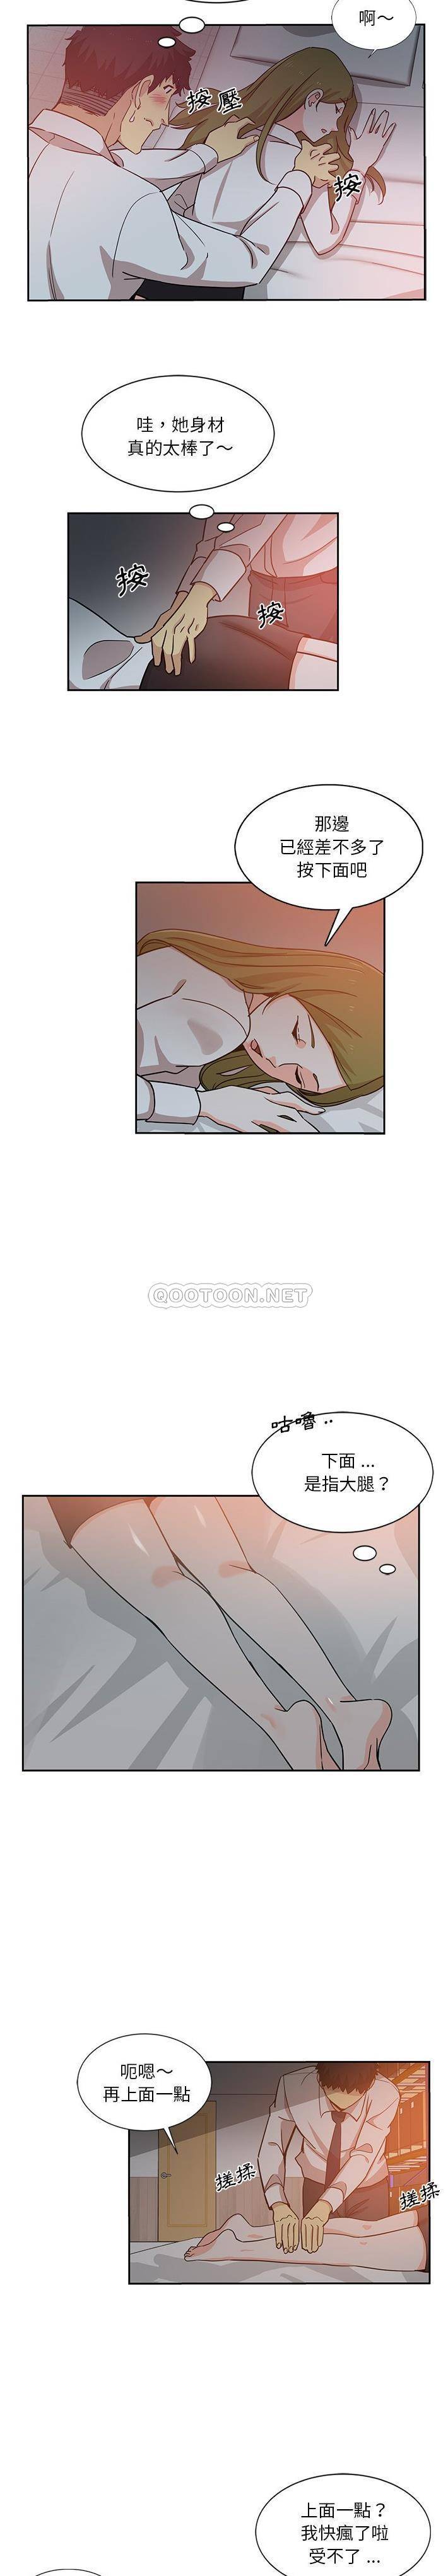 韩国污漫画 危險純友誼 第6话 8